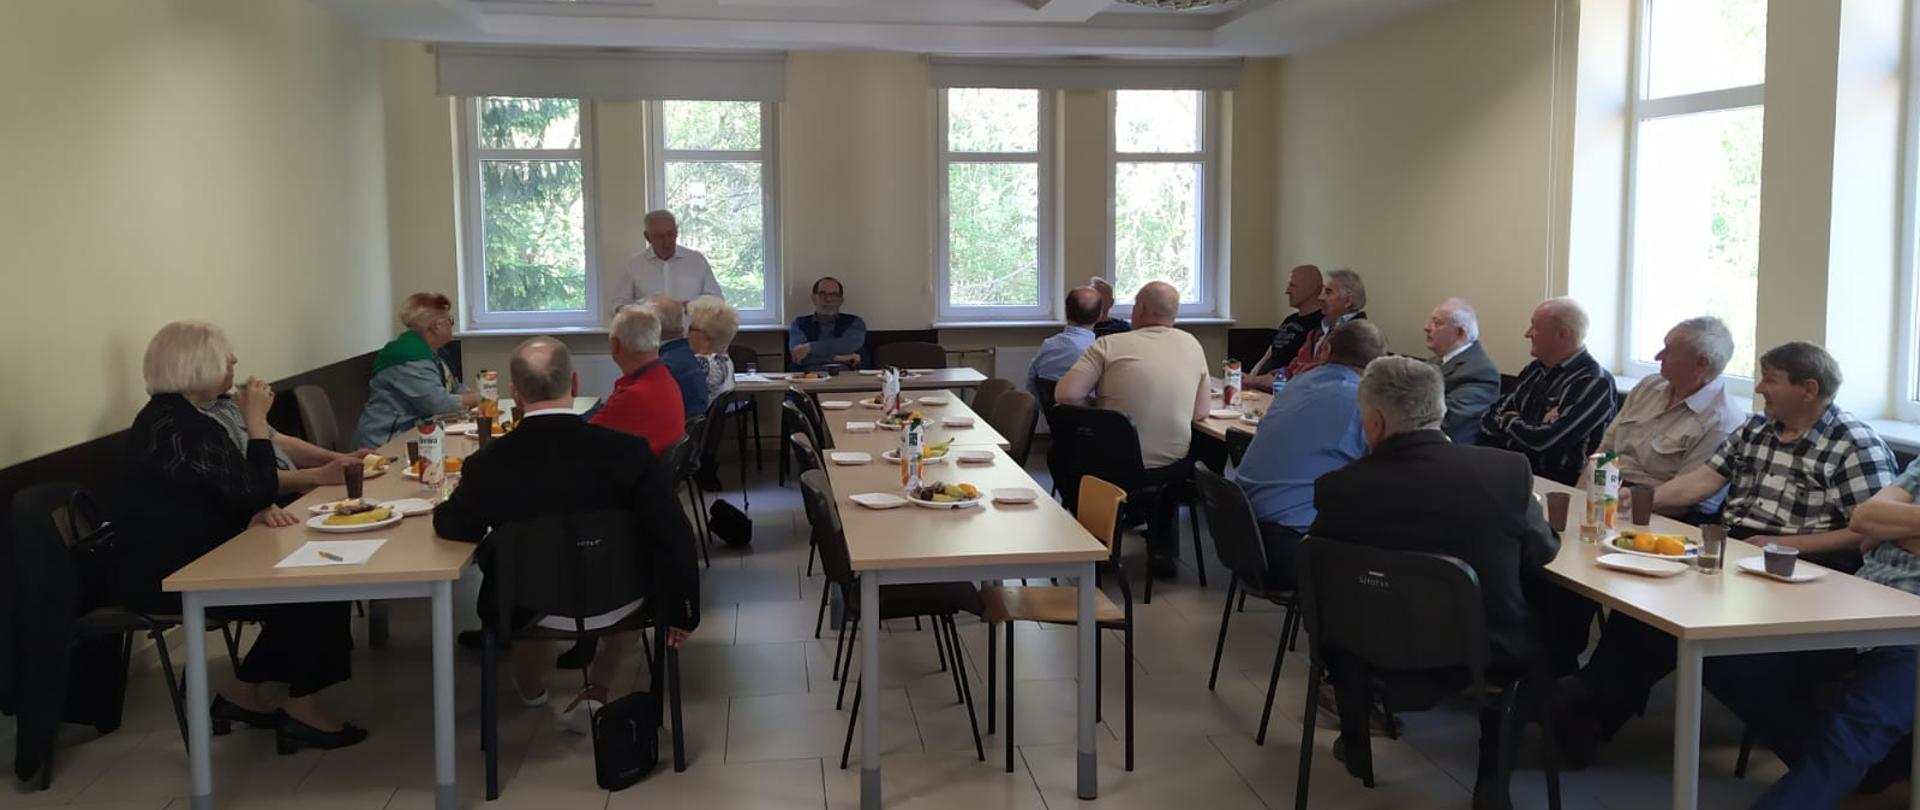 Spotkanie koła emerytów i rencistów KM PSP Koszalin